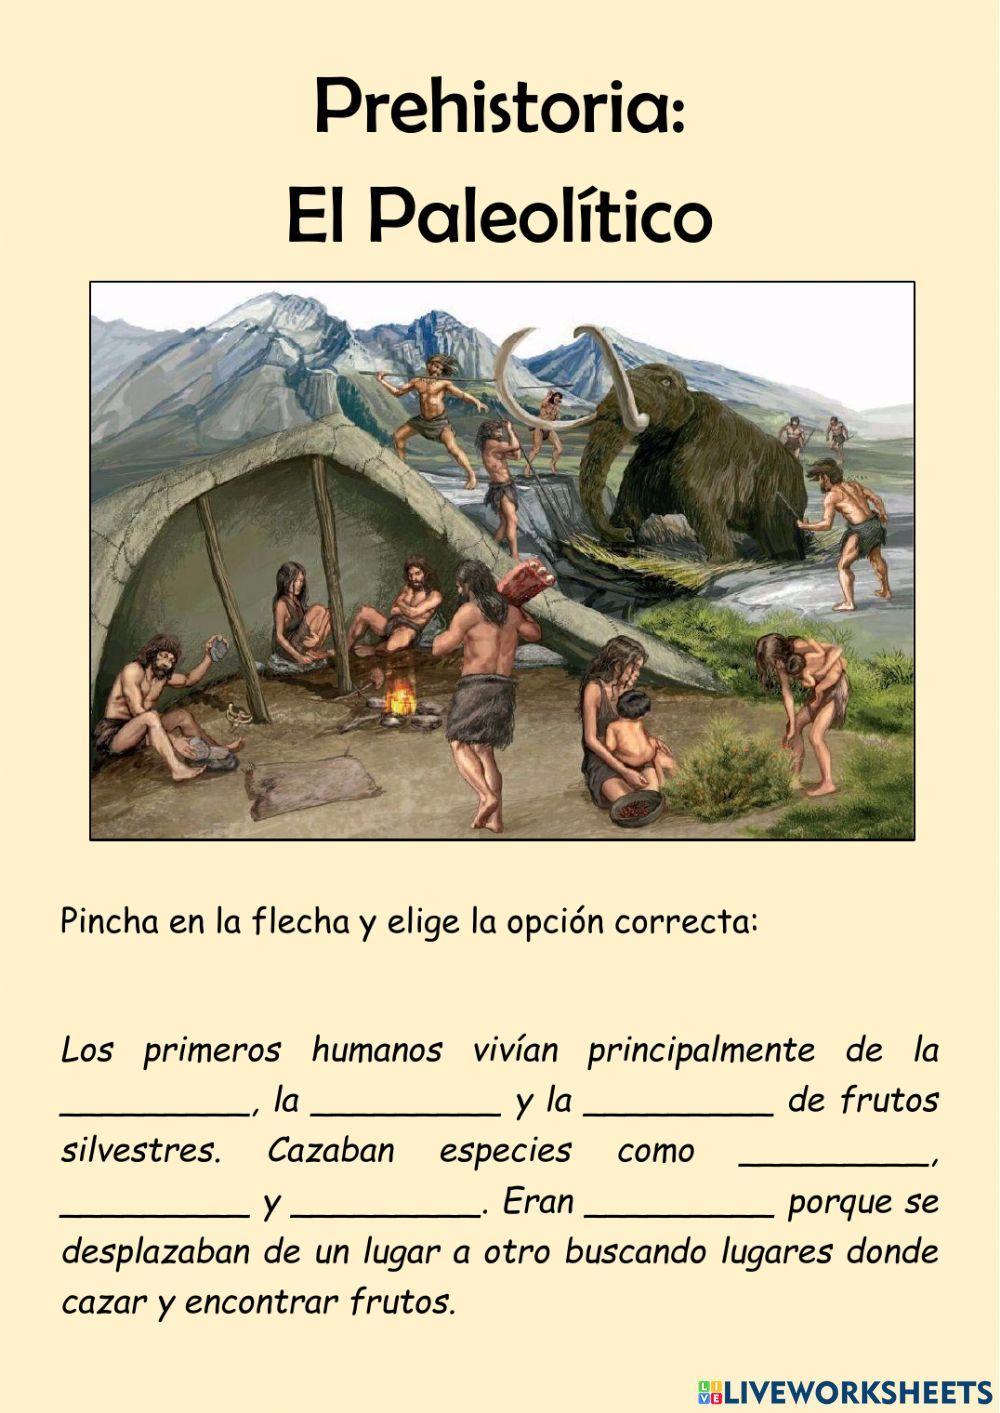 La Prehistoria: El Paleolítico